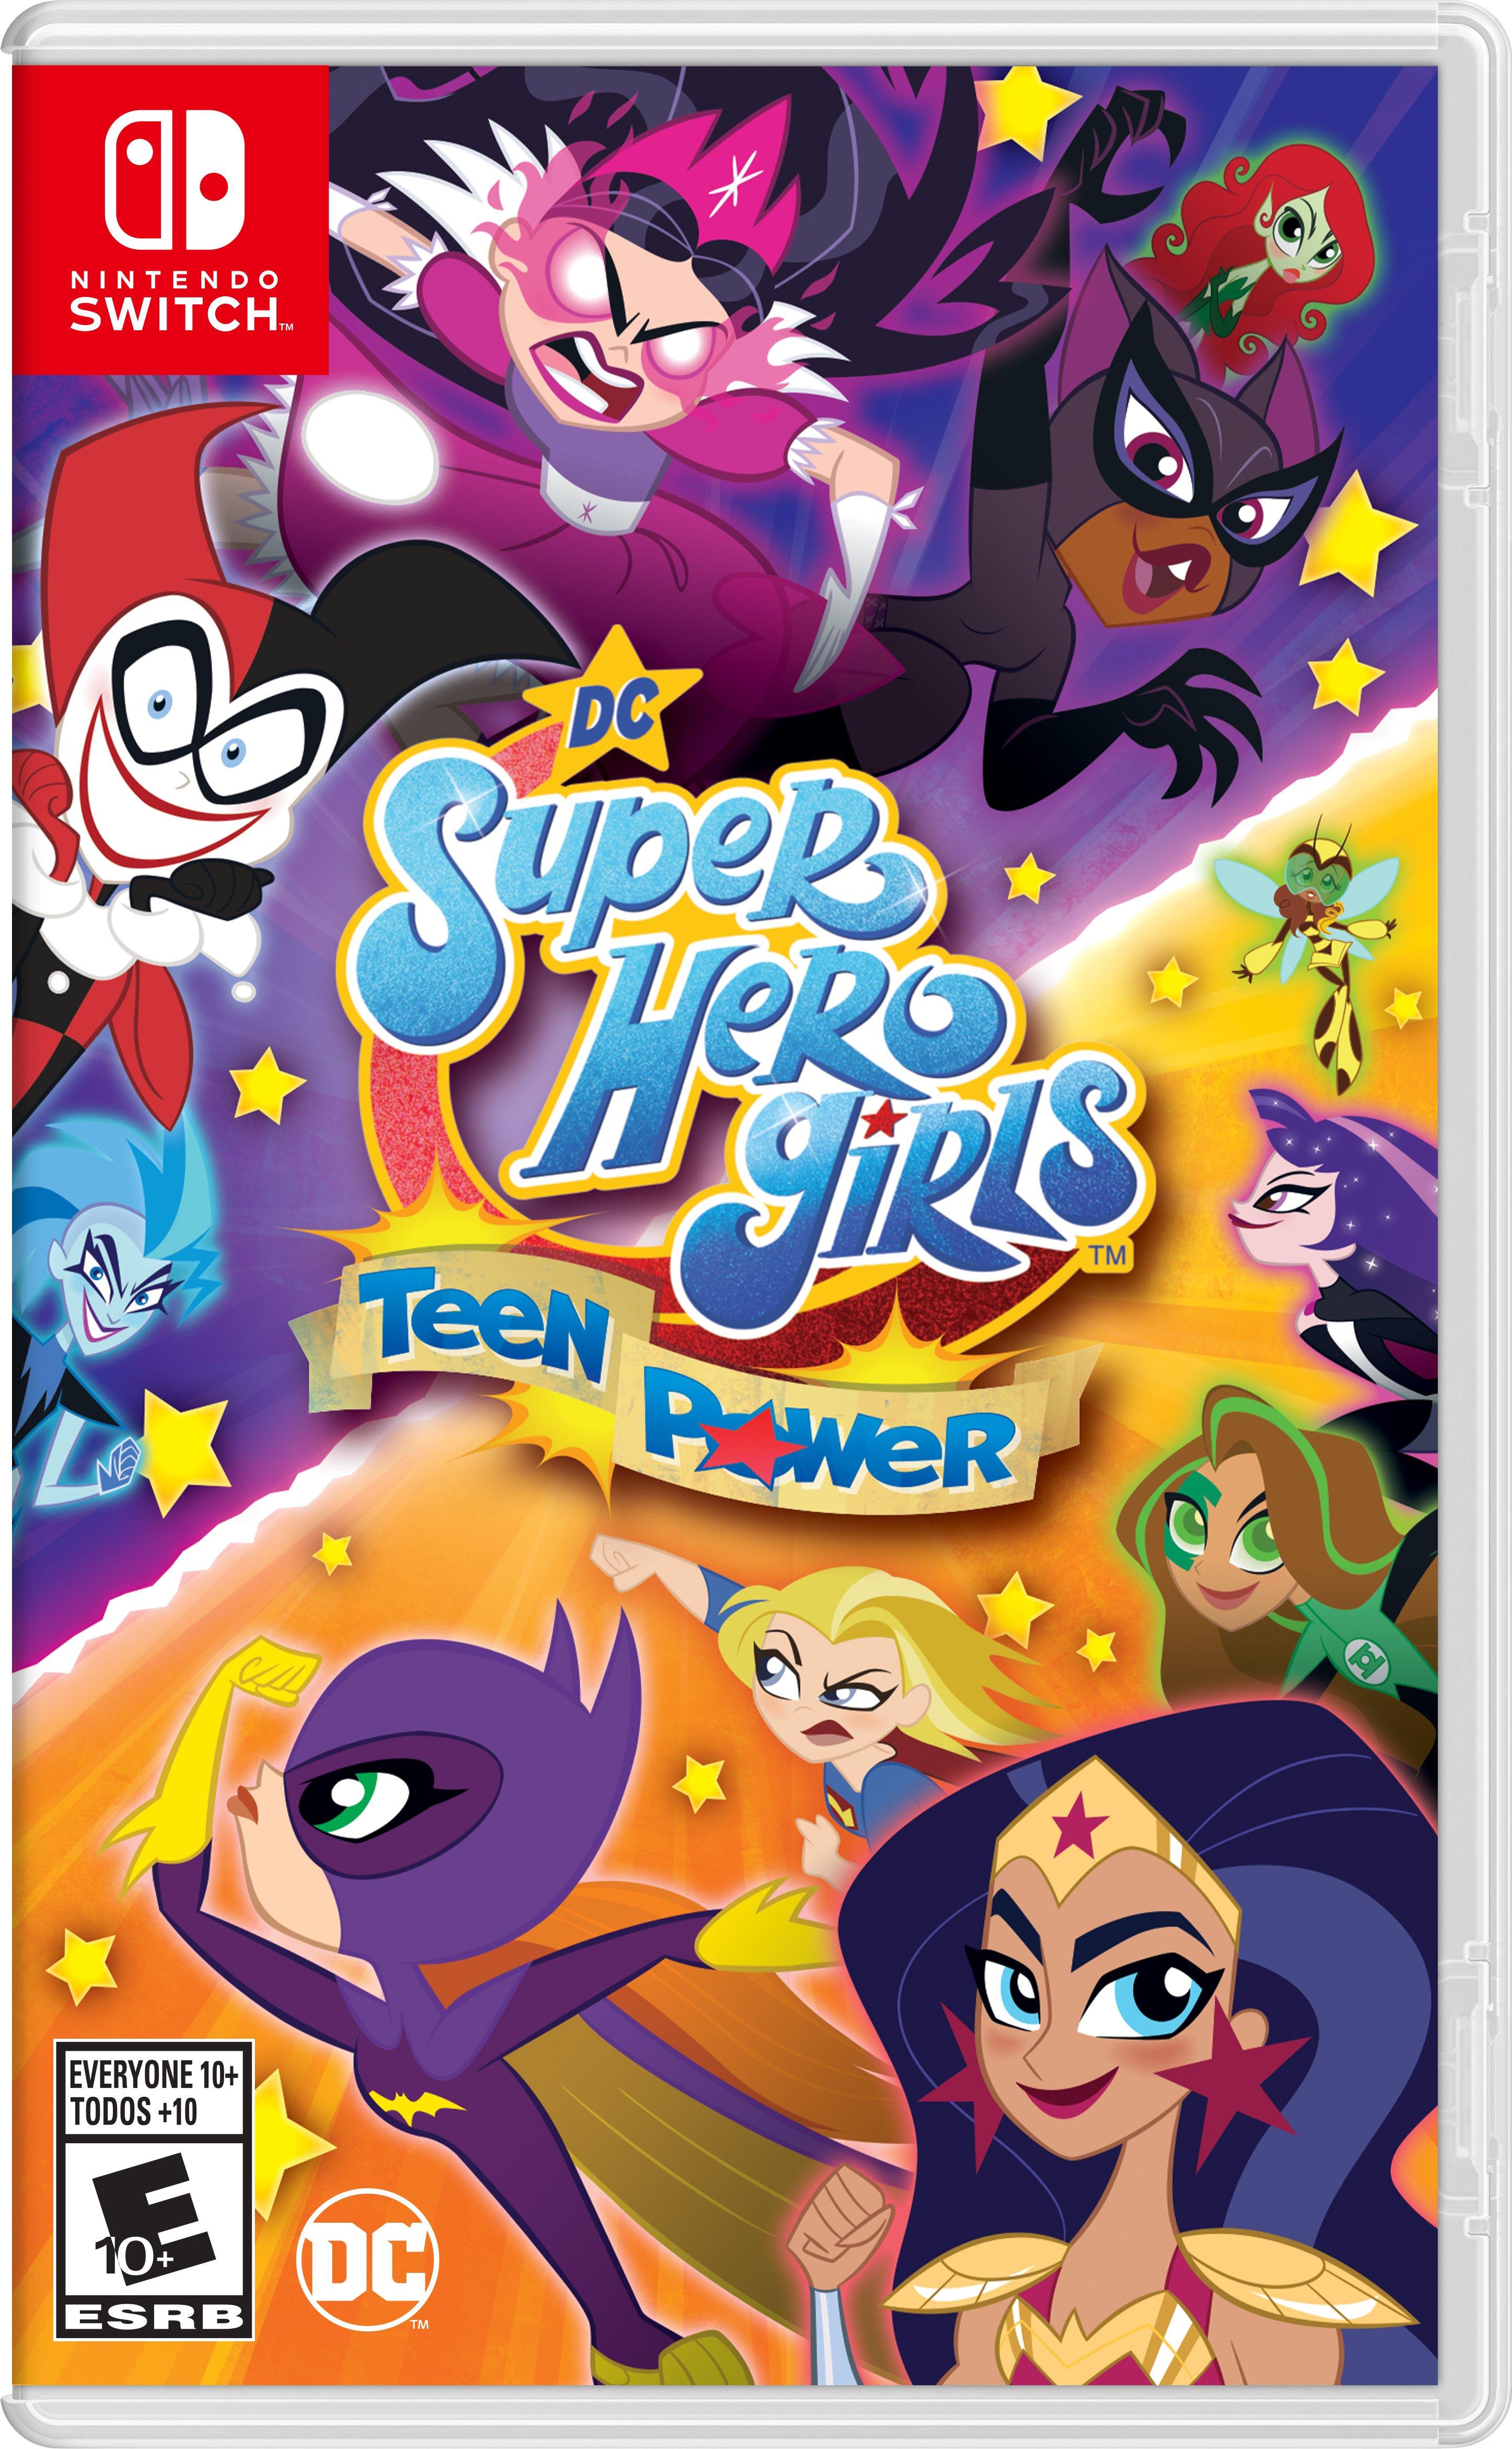 https://media.gamestop.com/i/gamestop/11118958/DC-Super-Hero-Girls-Teen-Power---Nintendo-Switch